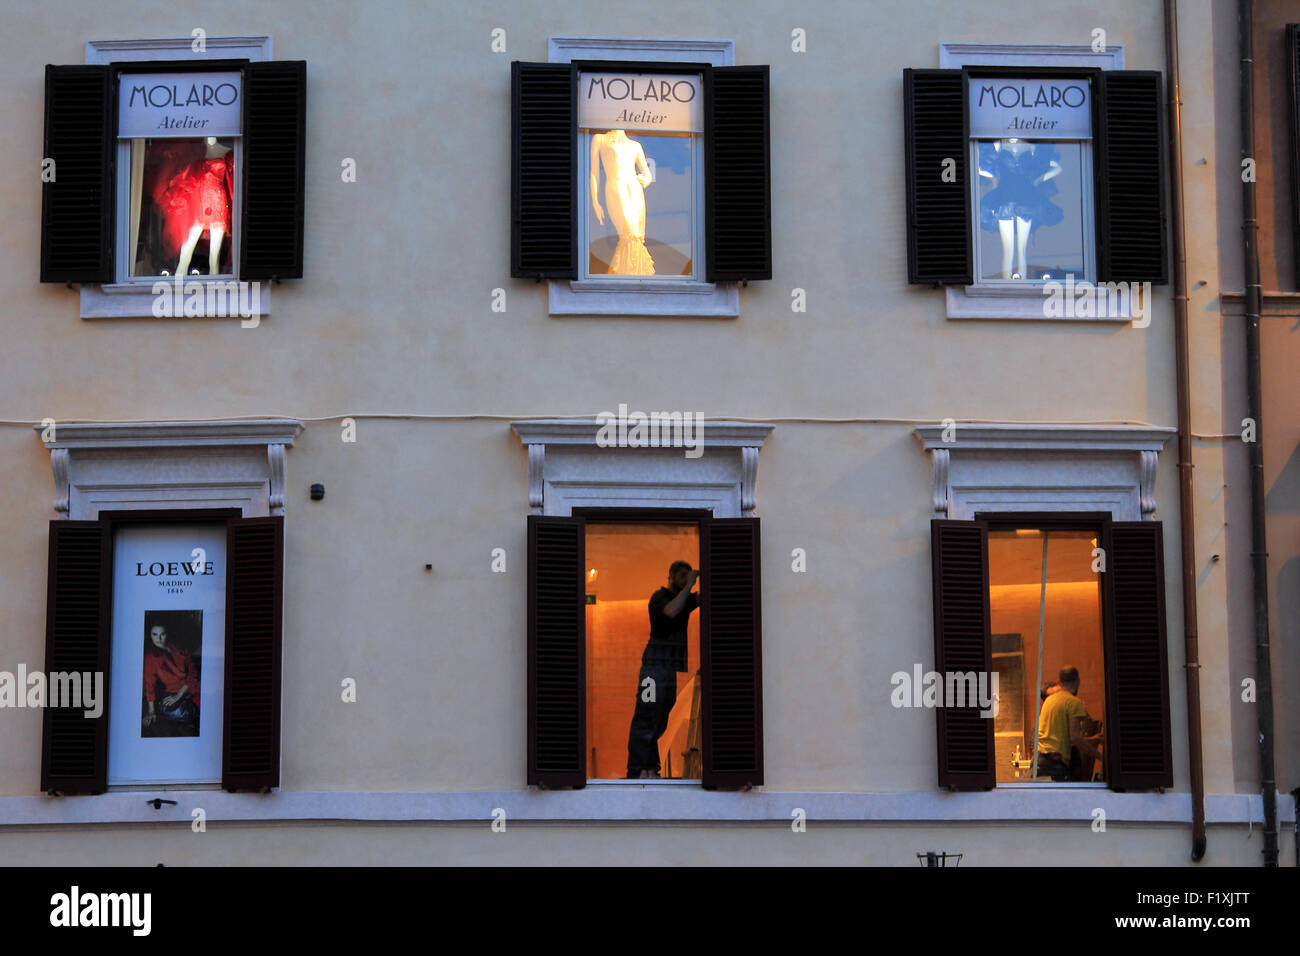 Façade d'un immeuble de boutiques de prêt à porter. Piazza di Spagna. Rome, Italie. Stock Photo